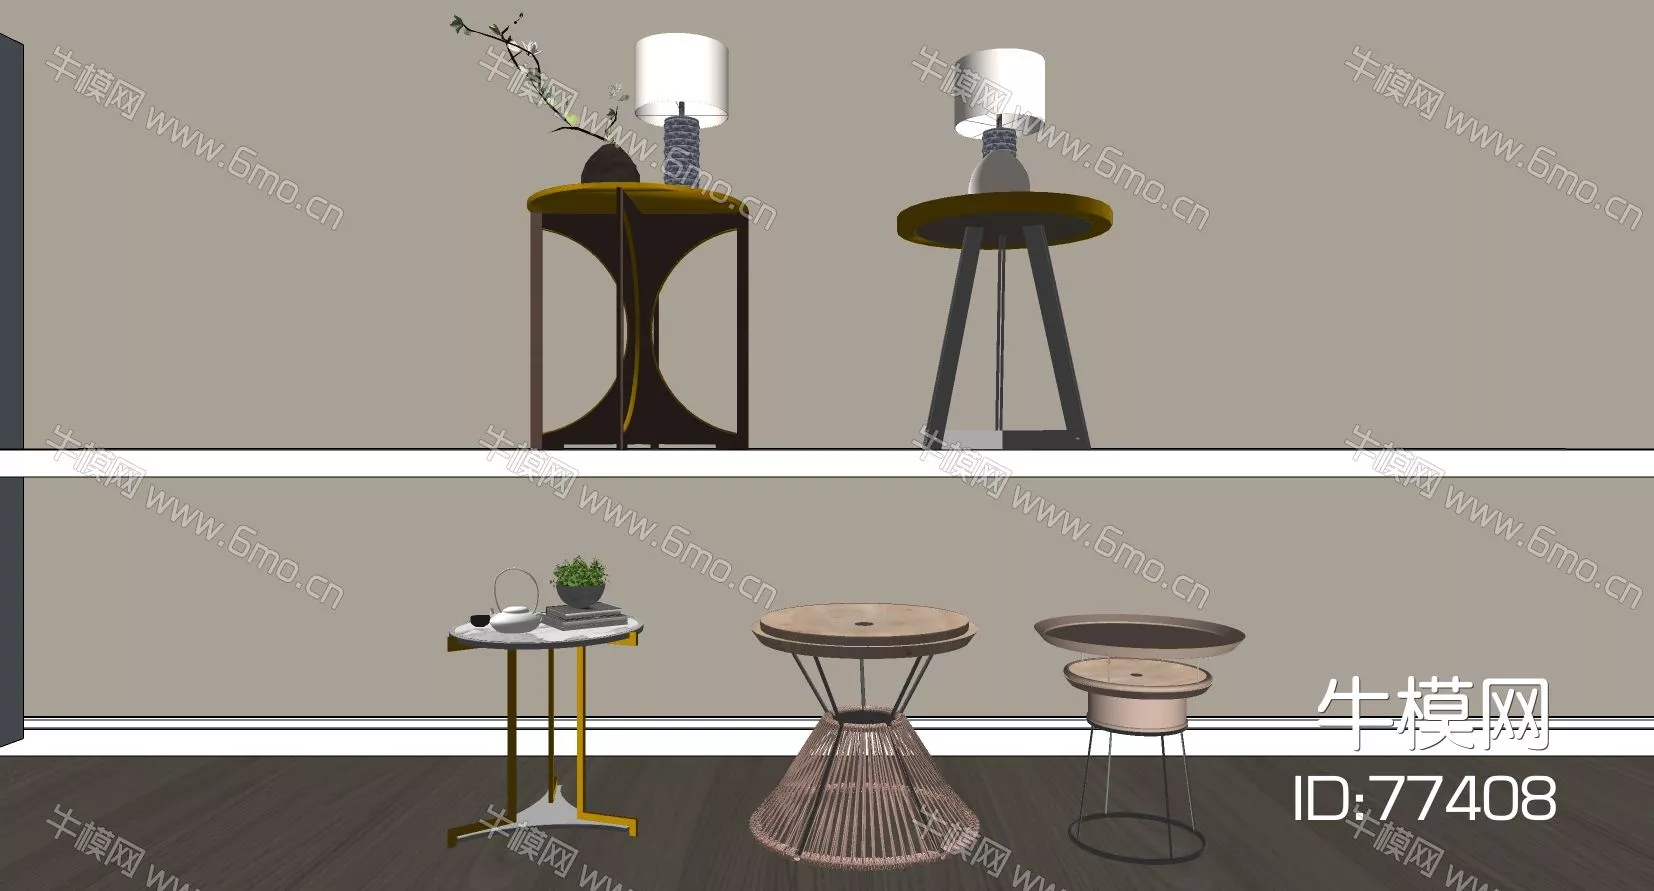 MODERN SIDE TABLE - SKETCHUP 3D MODEL - ENSCAPE - 77408